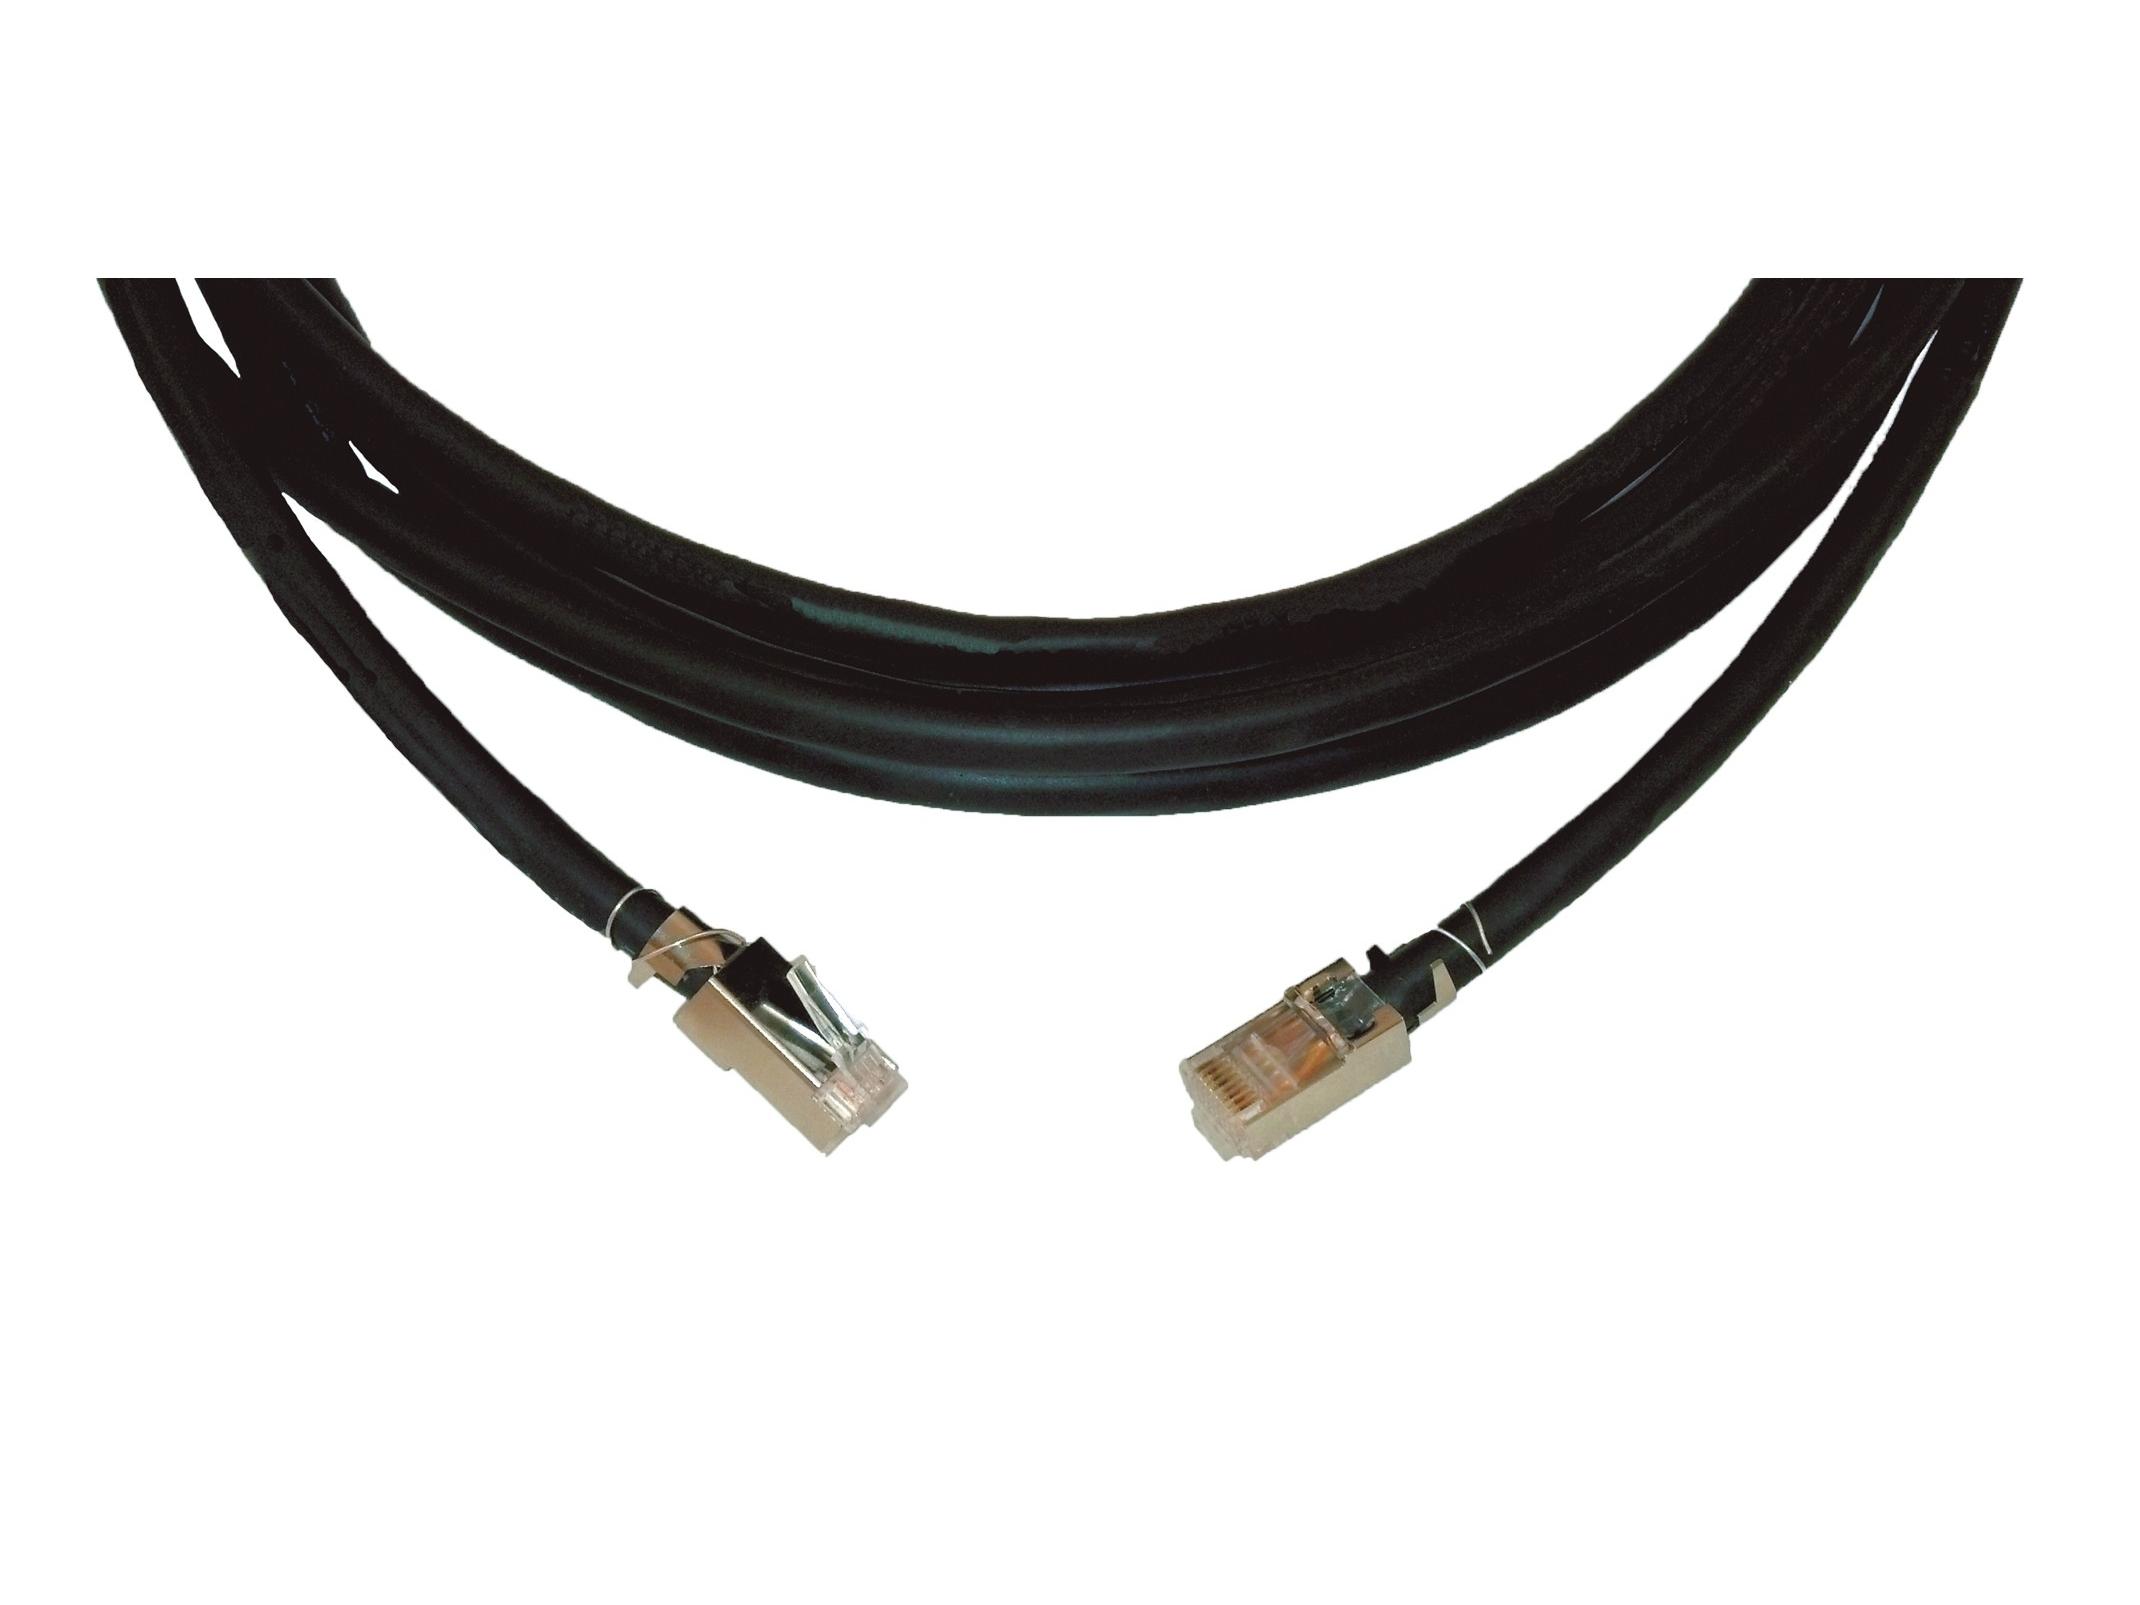 CP-DGK6/DGK6-125 Four-Pair STP Data (Shielded) Plenum Cable (23AWG) 125ft by Kramer